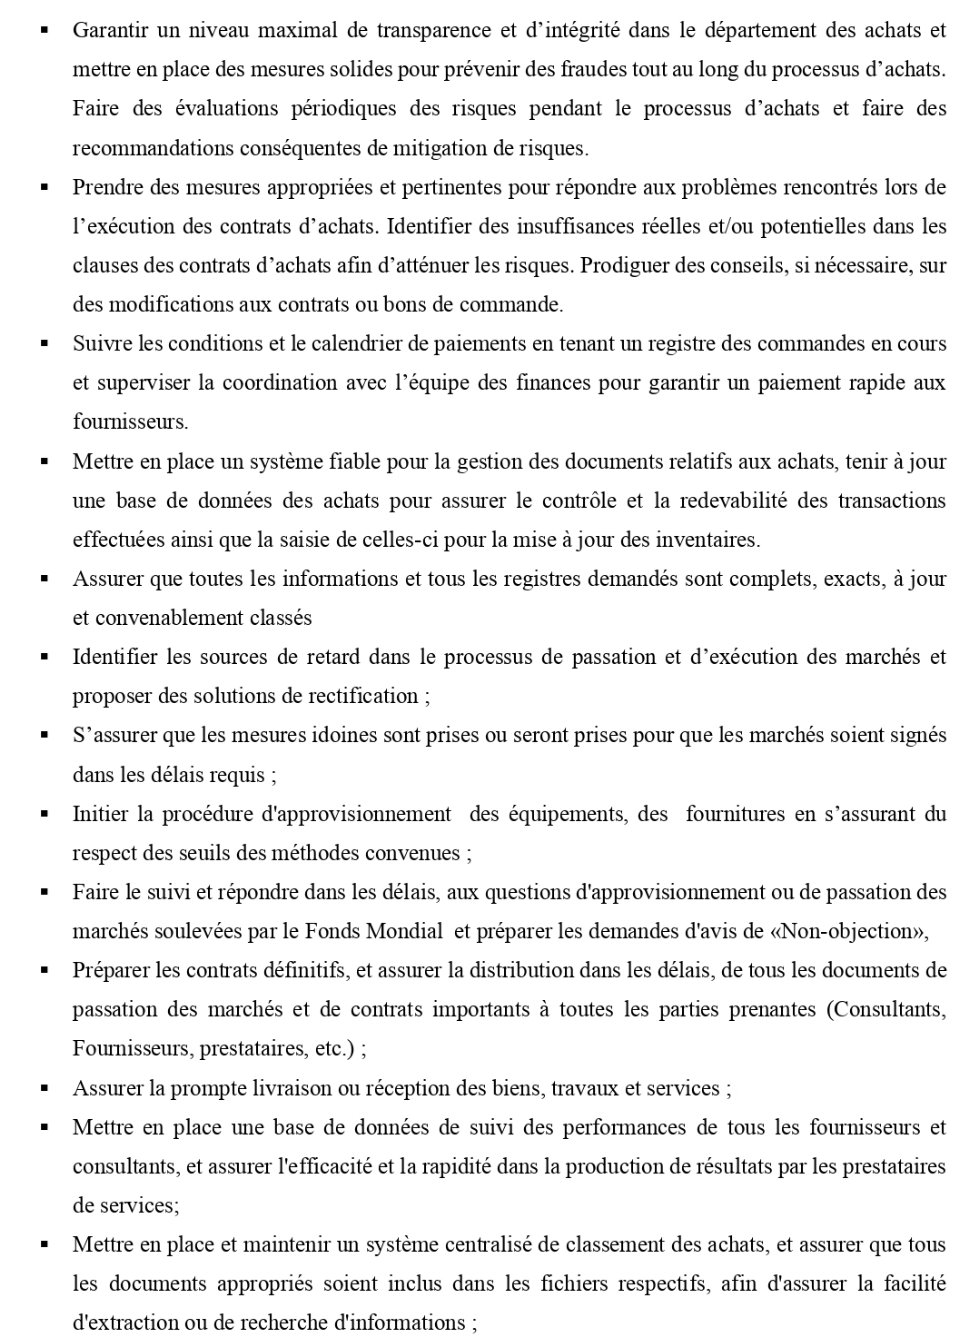 AVIS DE RECRUTEMENT D'UN(E) SPECIALISTE EN PASSATION DES MARCHES DU PNLP | Page 2